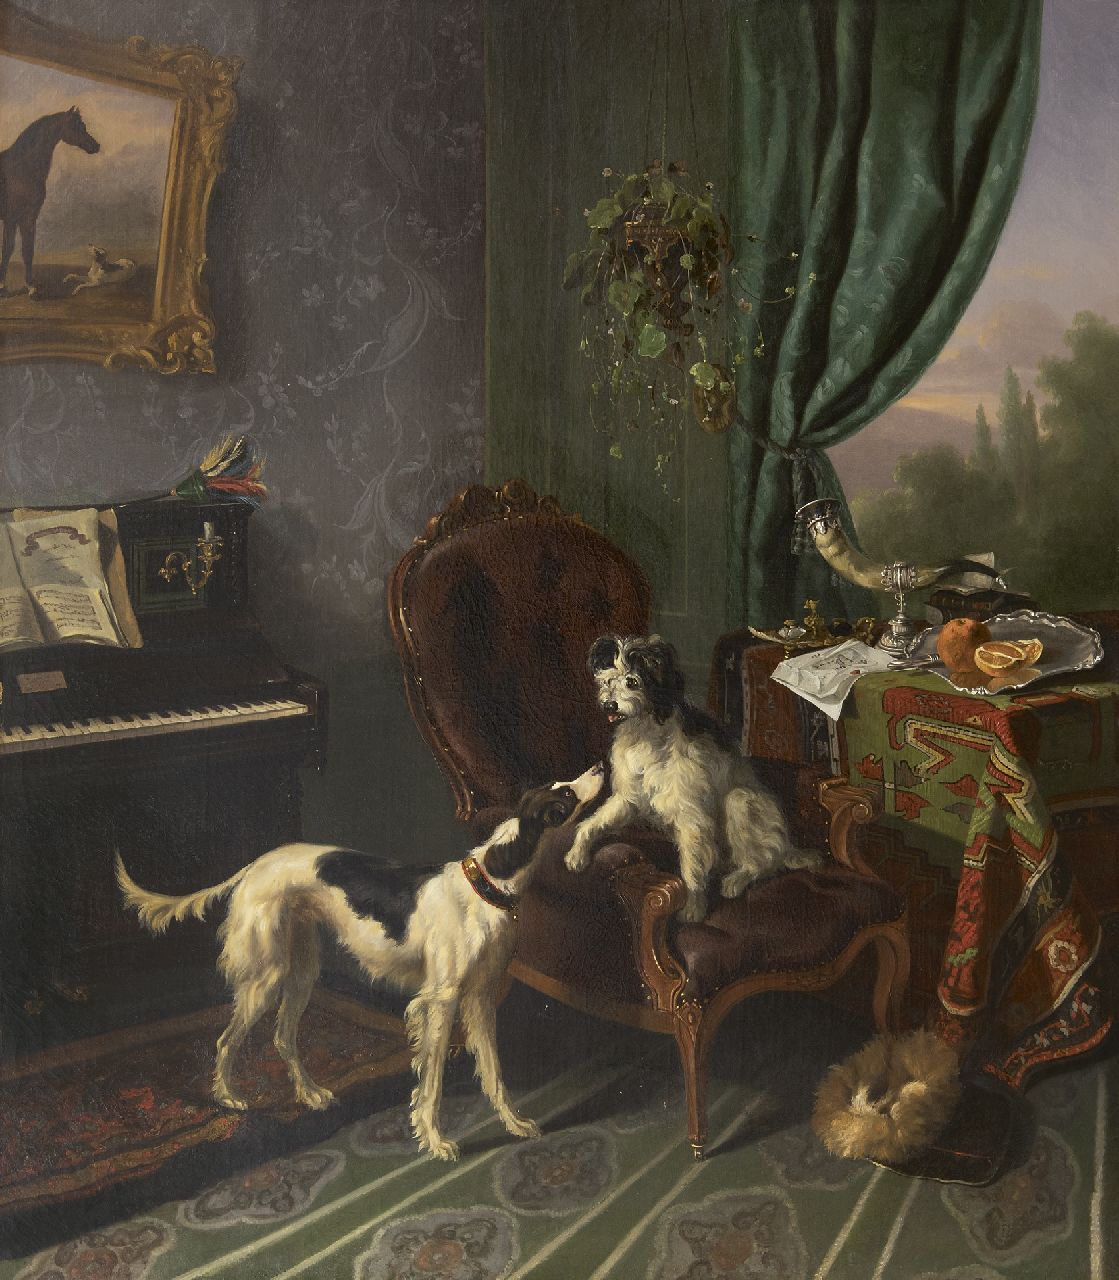 Verschuur W.  | Wouterus Verschuur | Gemälde zum Verkauf angeboten | Musikzimmer mit zwei Hunden, Öl auf Leinwand 90,0 x 79,0 cm, zu datieren um 1848-1850